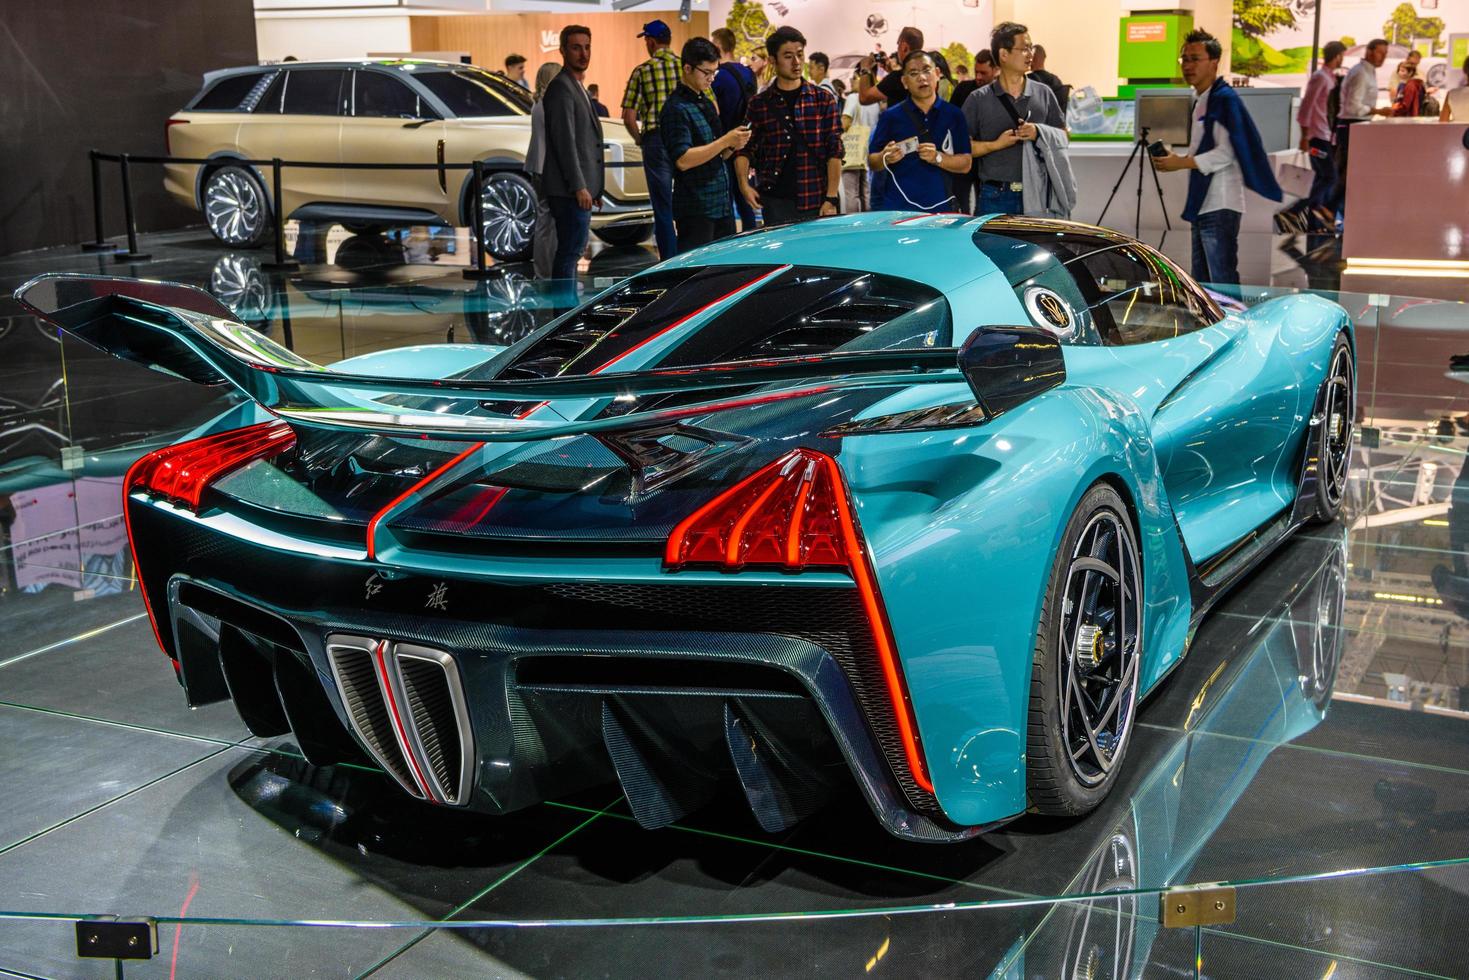 frankfurt, alemania - sept 2019 blue azure hongqi s9 - superdeportivo eléctrico con 1400 hp de china, exhibición de autos del salón internacional del automóvil iaa foto